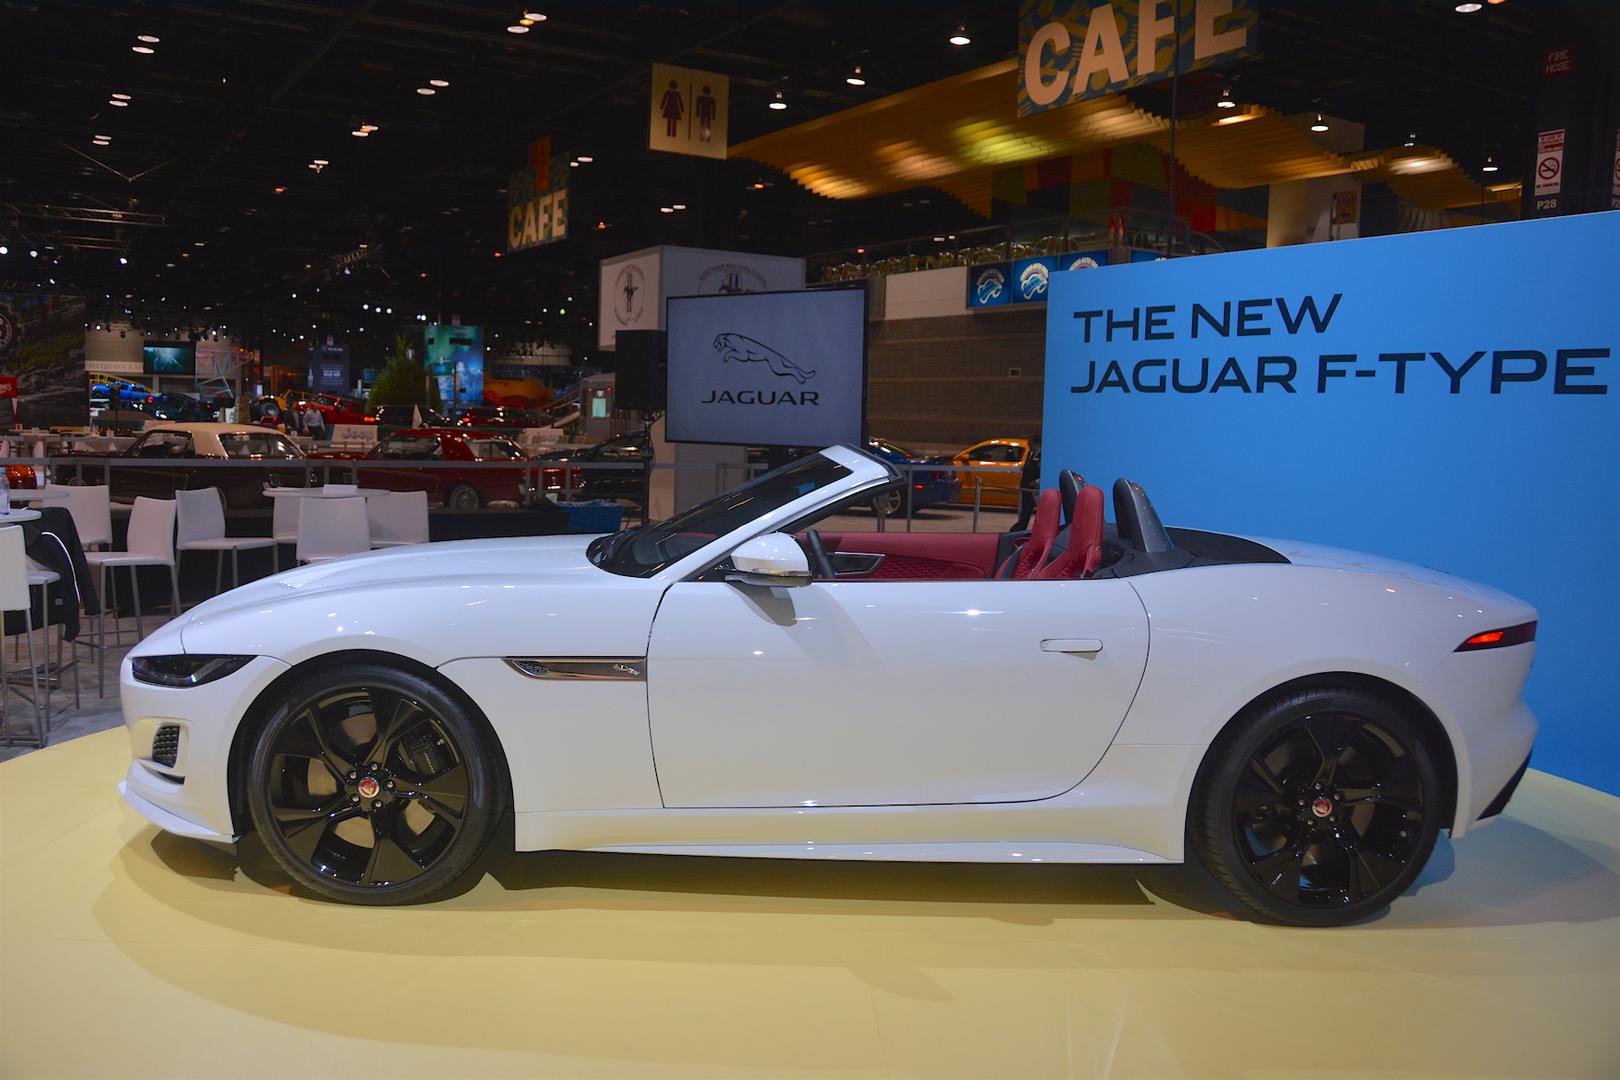 Полностью осознавая, насколько привлекательным был старый F-Type, команда дизайнеров Jaguar решила не рисковать, и не облажалась, внося лишь тонкие изменения, улучшающие внешний вид суперкара. В результате автомобиль все еще остается классическим F-T